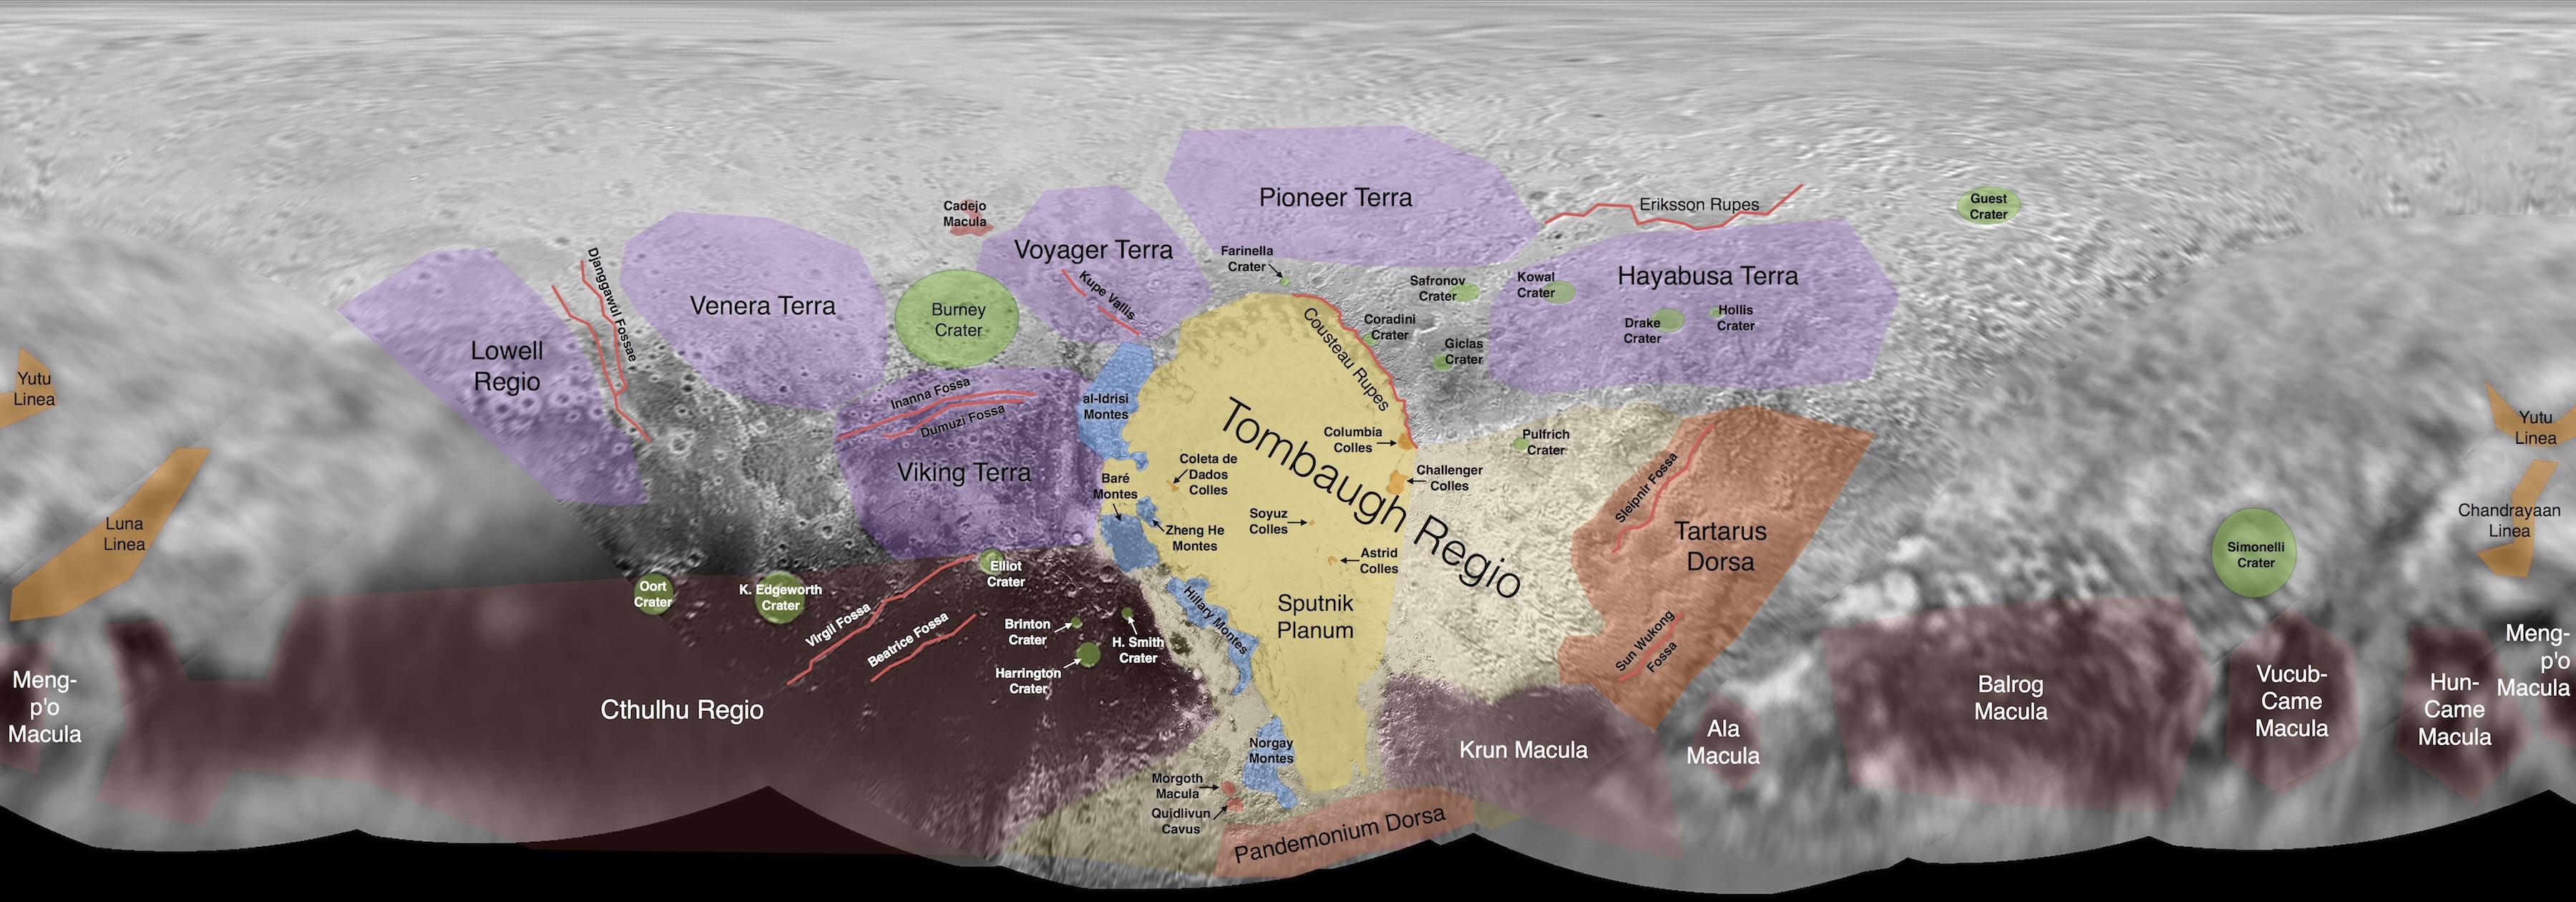 Океан на Плутоне мог существовать с рождения планеты